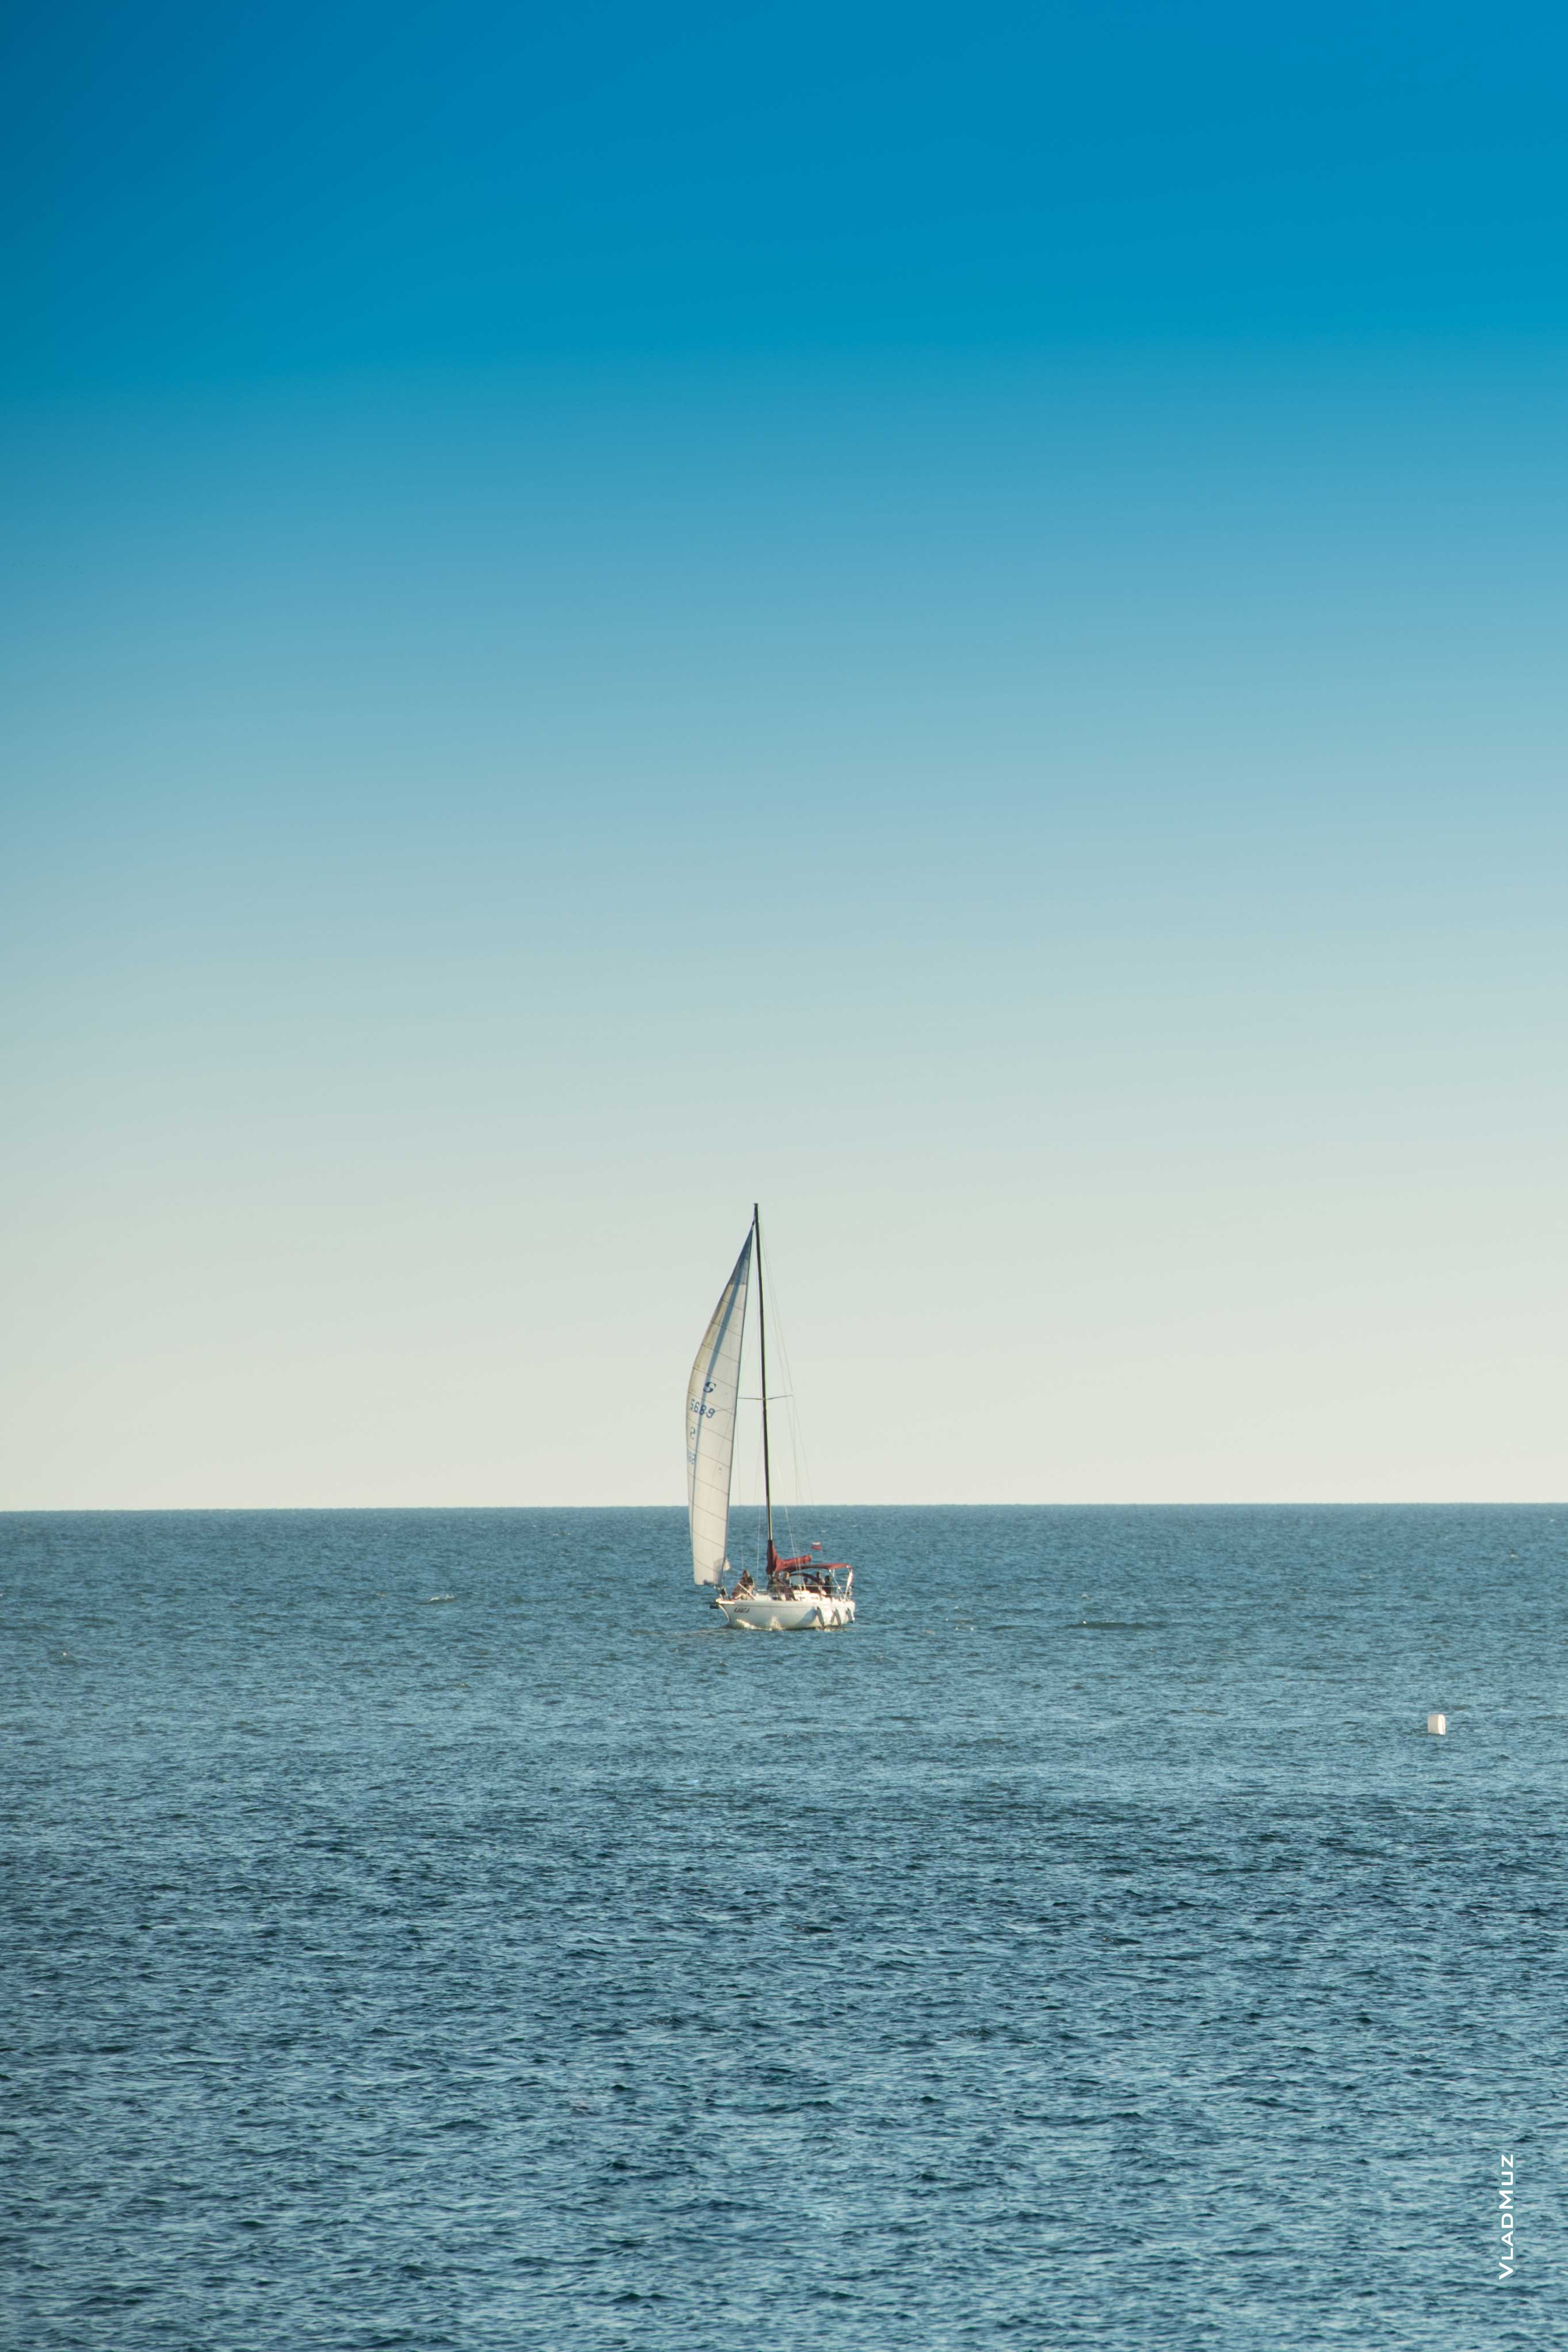 HD-фото яхты под белым парусом в море в HD качестве (2725 на 4090 пикселей)